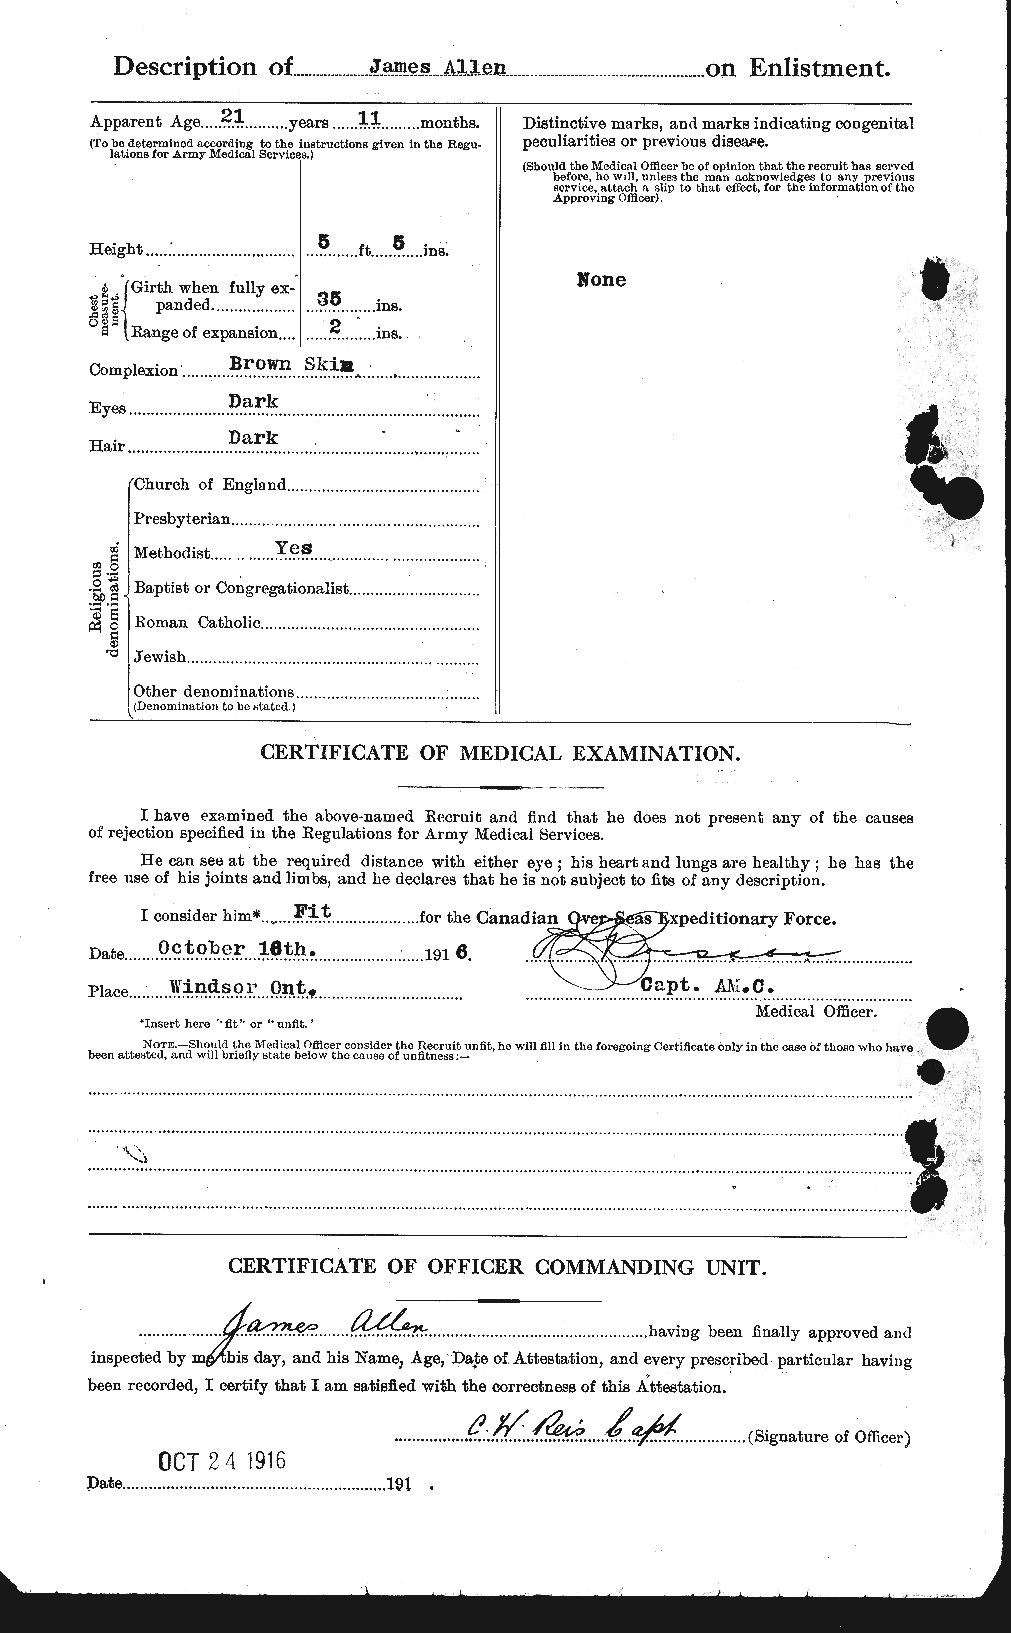 Dossiers du Personnel de la Première Guerre mondiale - CEC 206444b